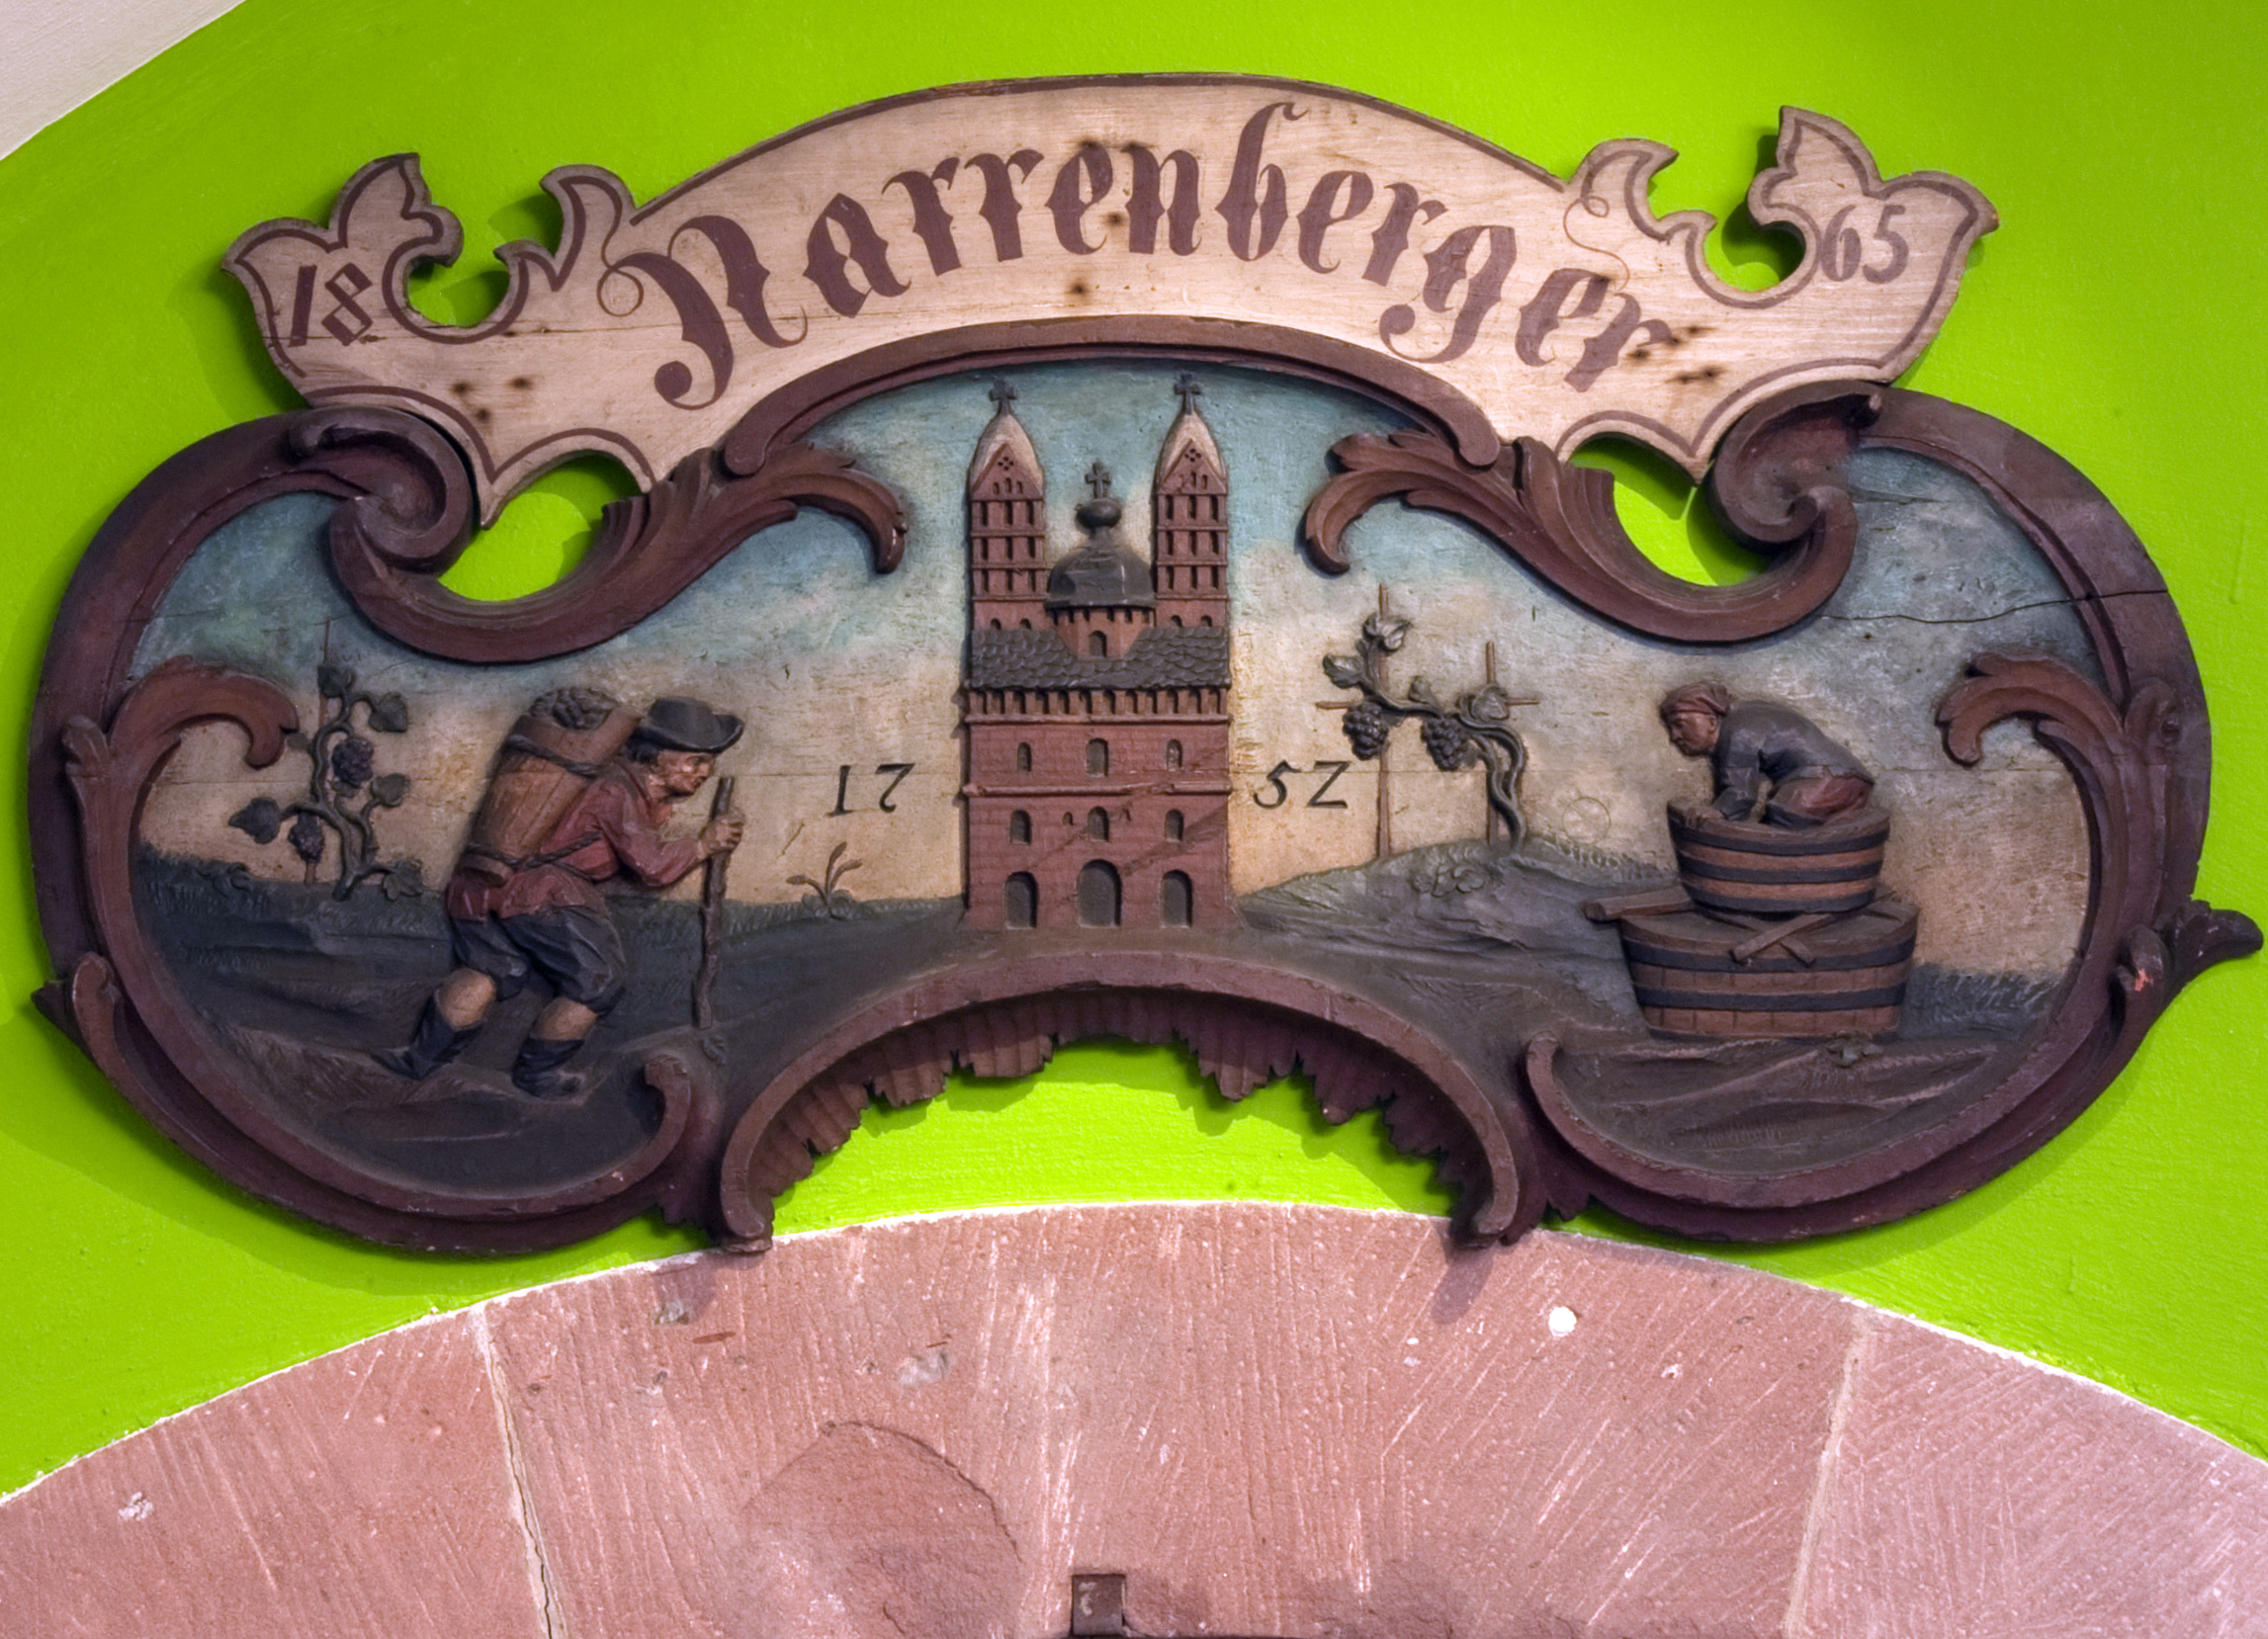 Zierschild "Narrenberger" (Historisches Museum der Pfalz, Speyer CC BY)